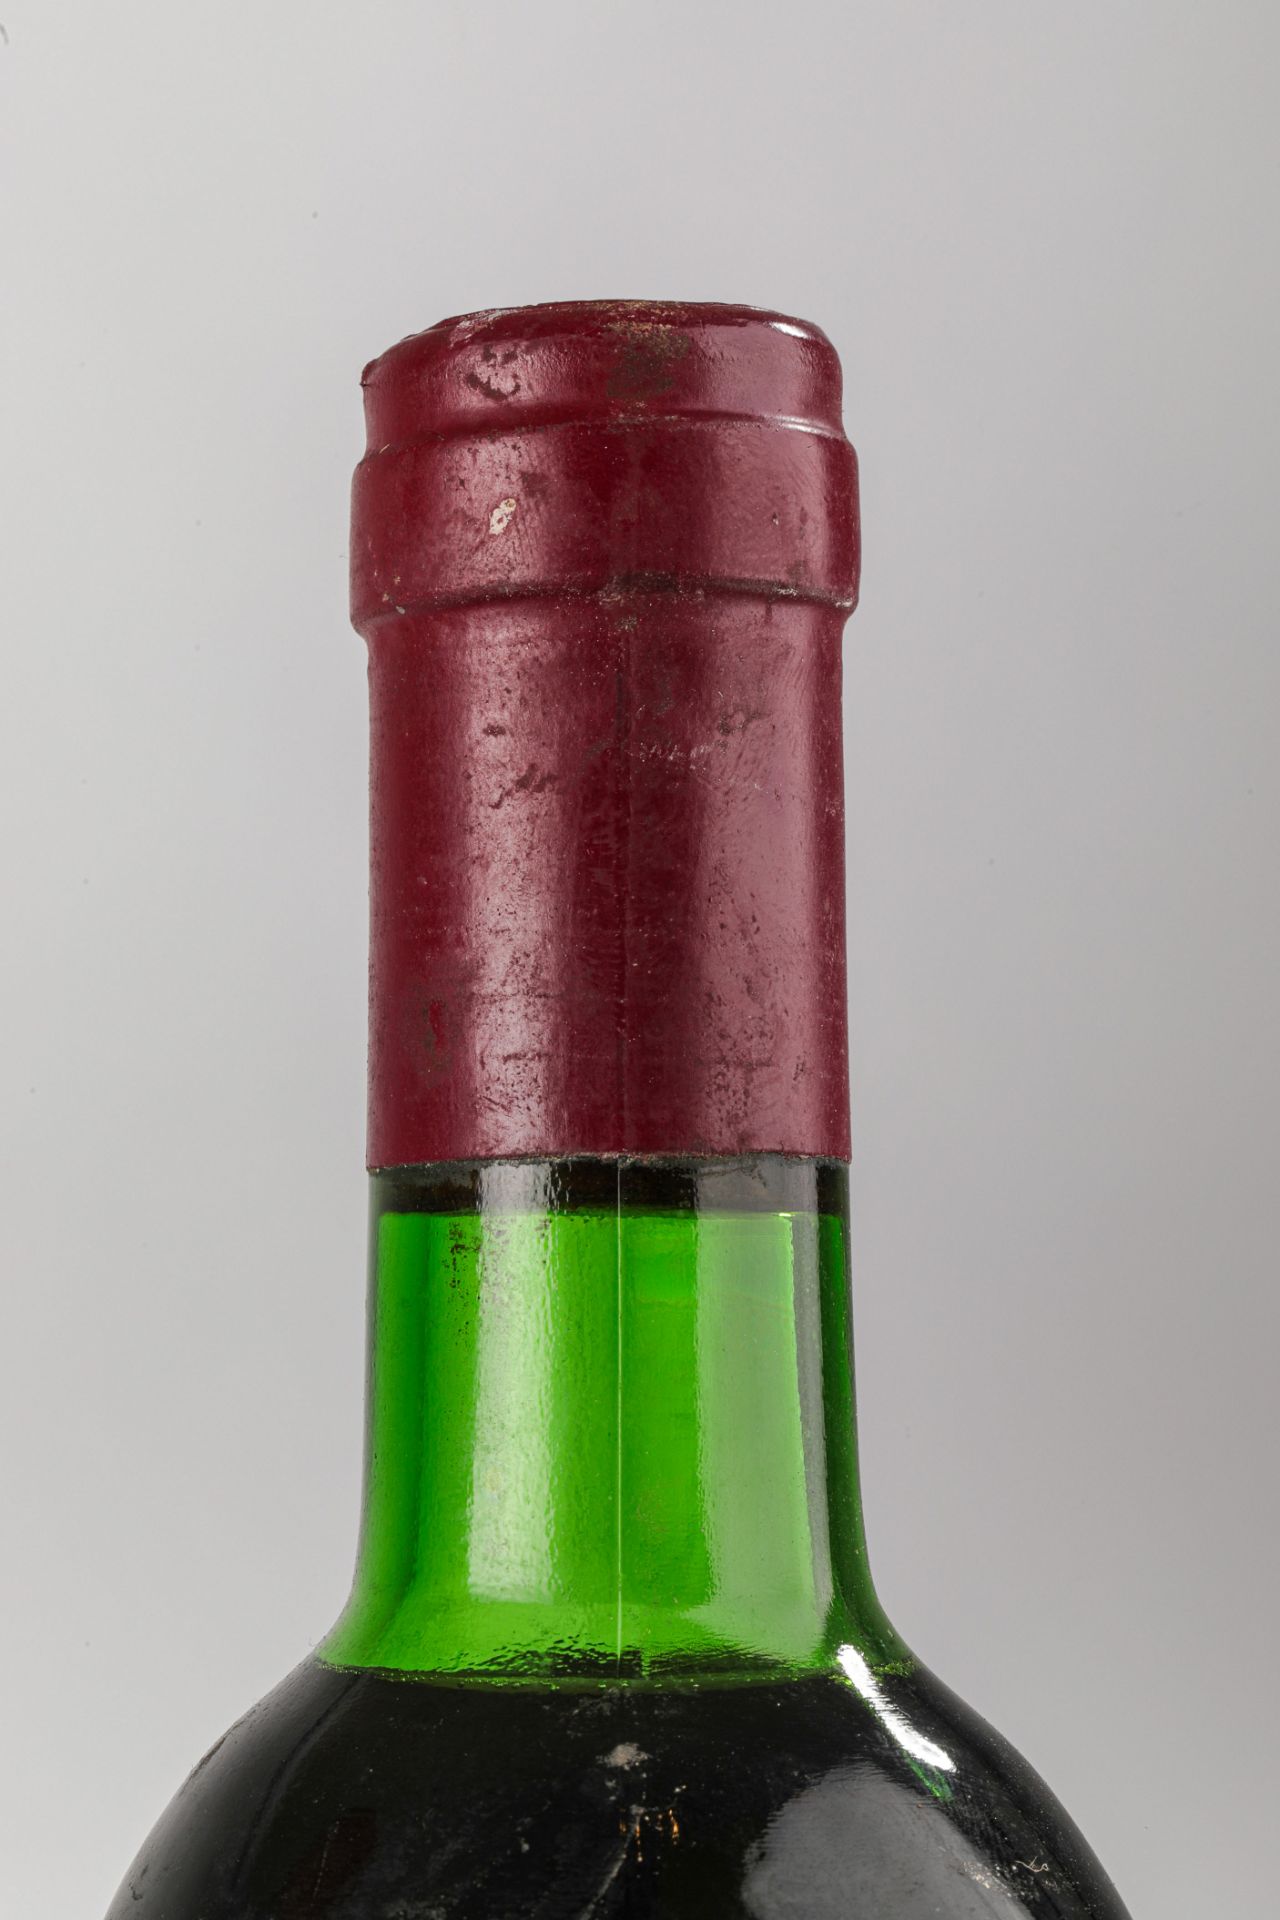 VEGA SICILIA UNICO. 1964. 2 Bouteilles N° 09928 et N°46411 sur production de 96 000 bouteilles. - Image 7 of 9